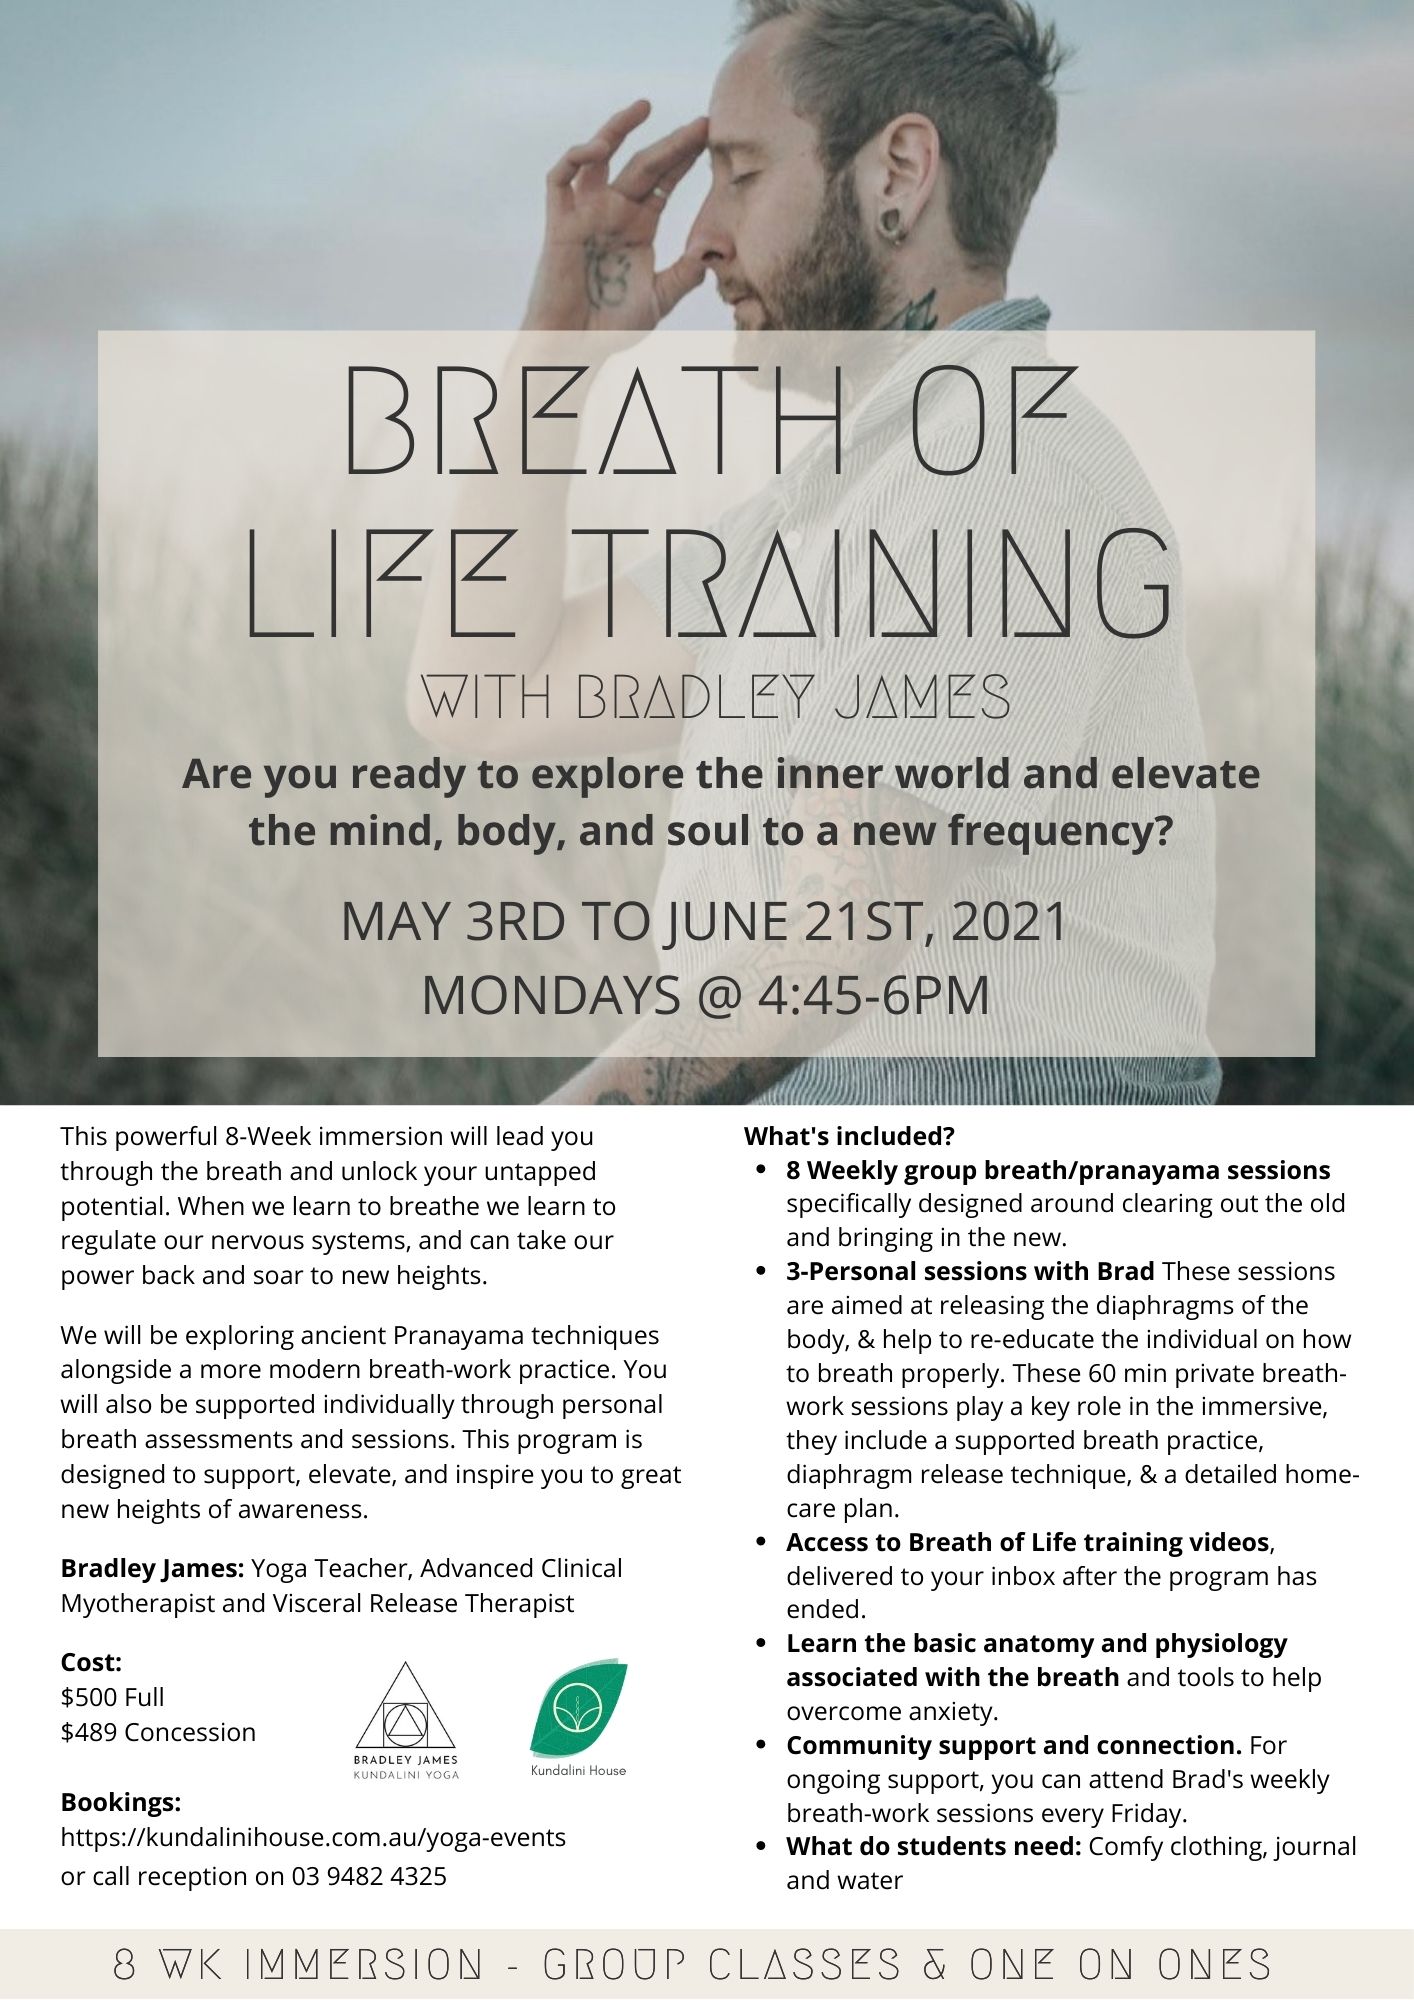 Breathe of life training